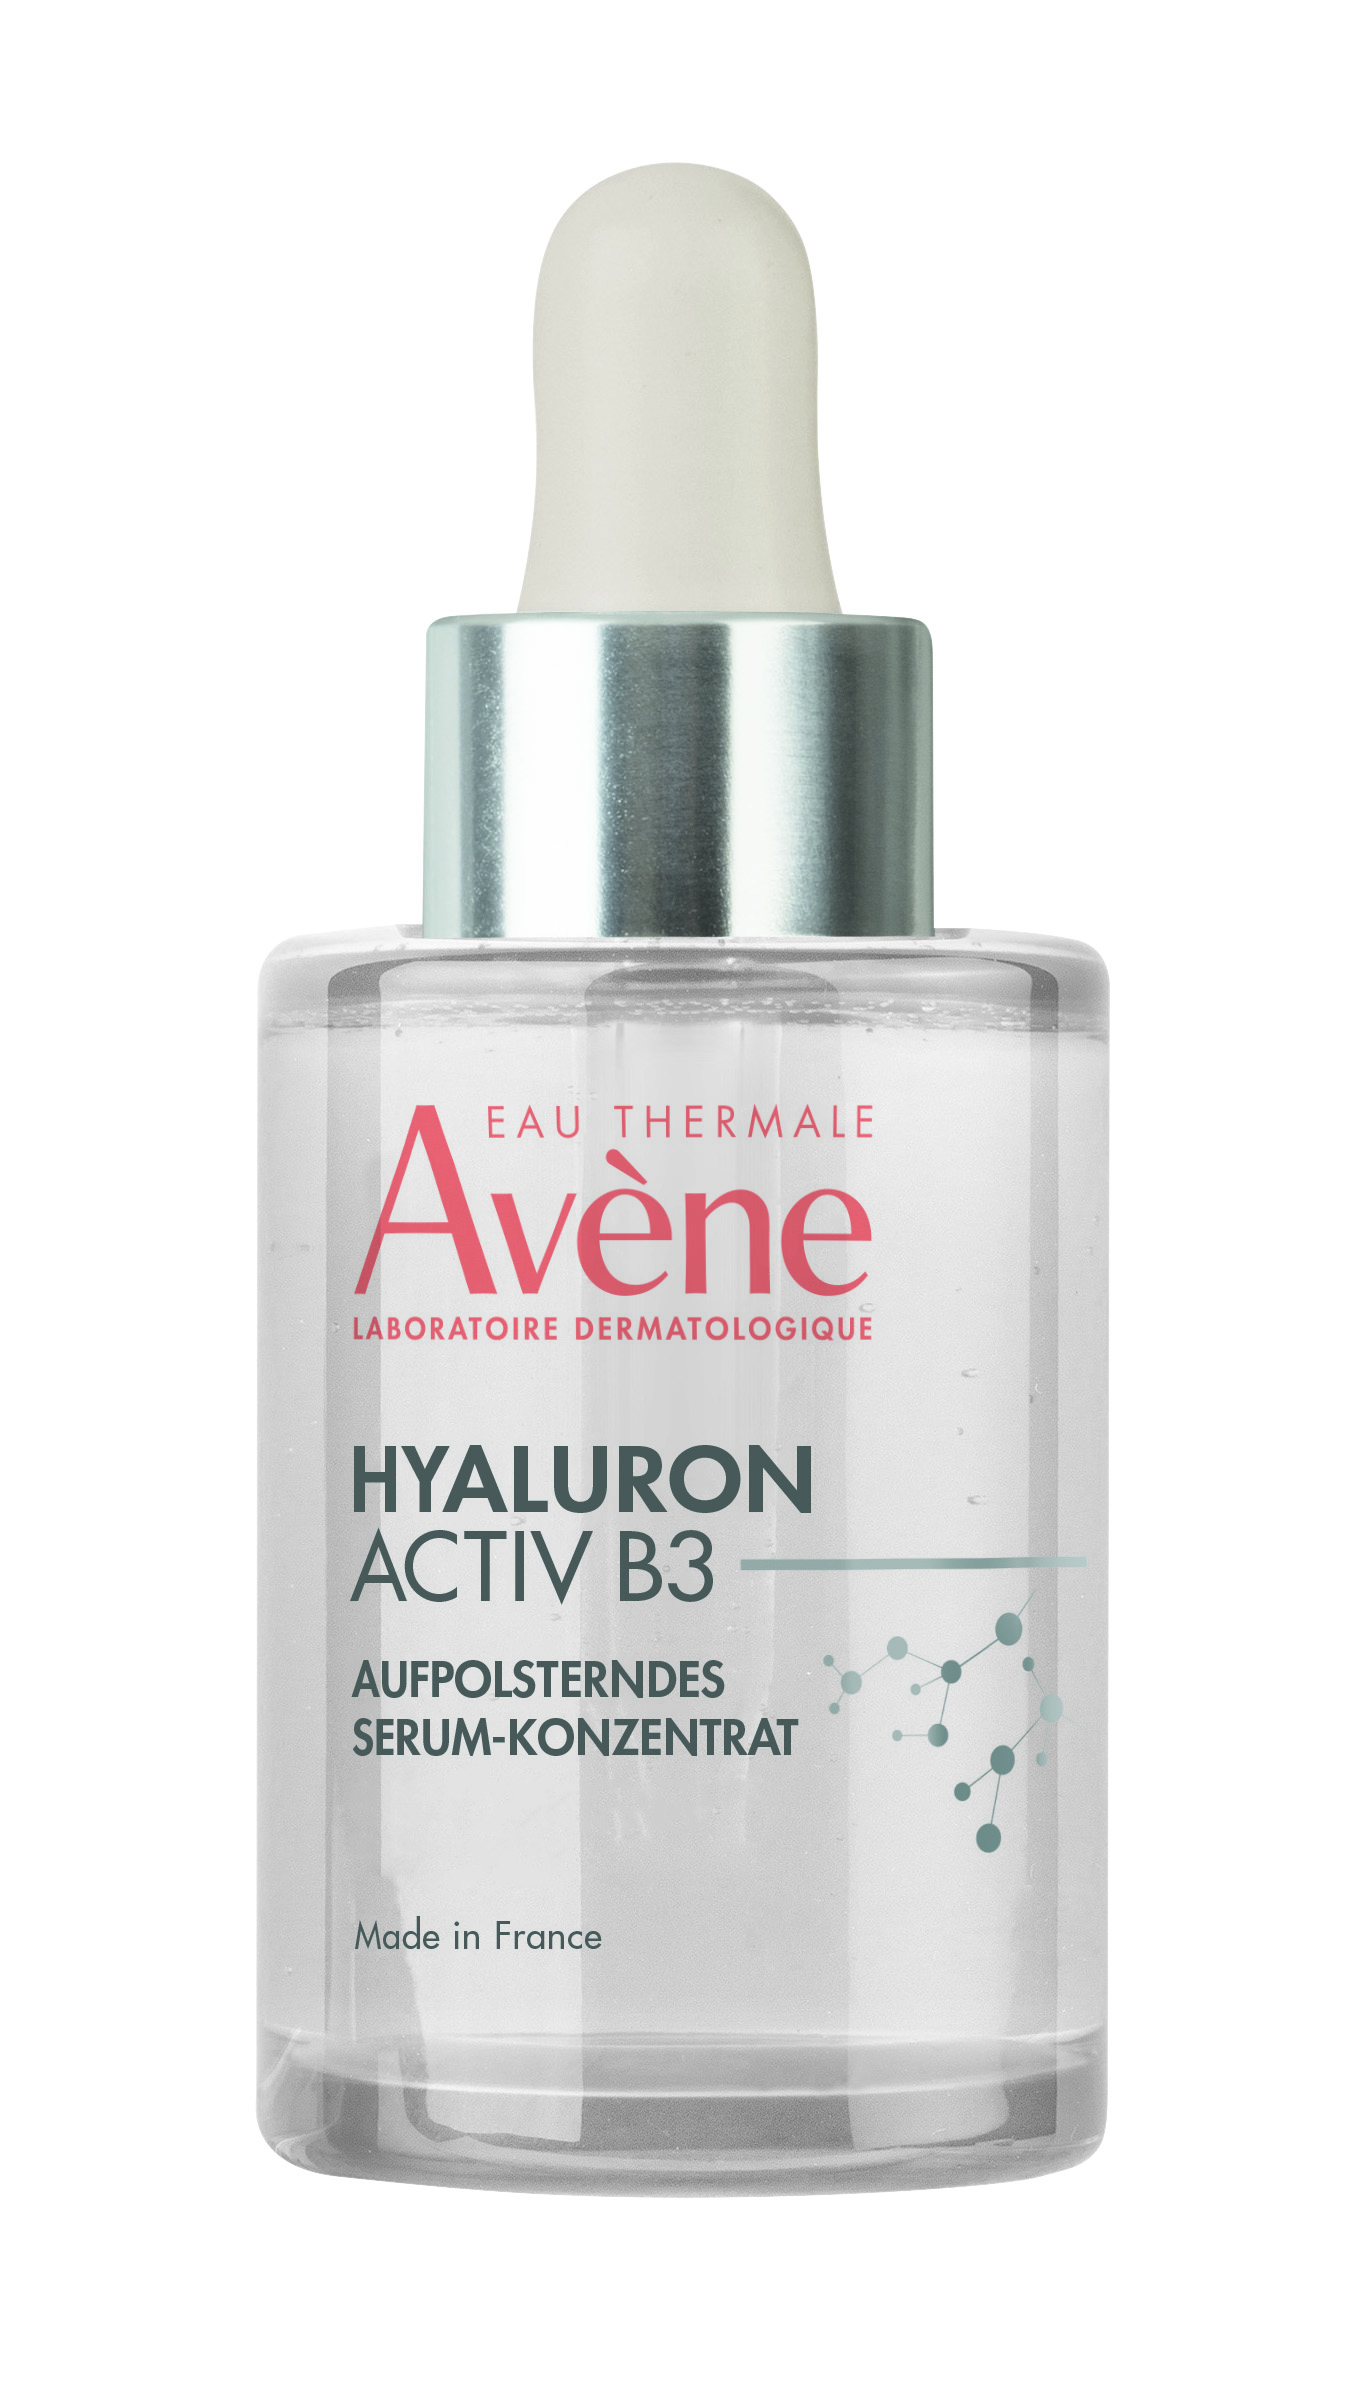 Avene Hyaluron Activ B3 Aufpolsterndes Serum-Konzentrat (30 ml)